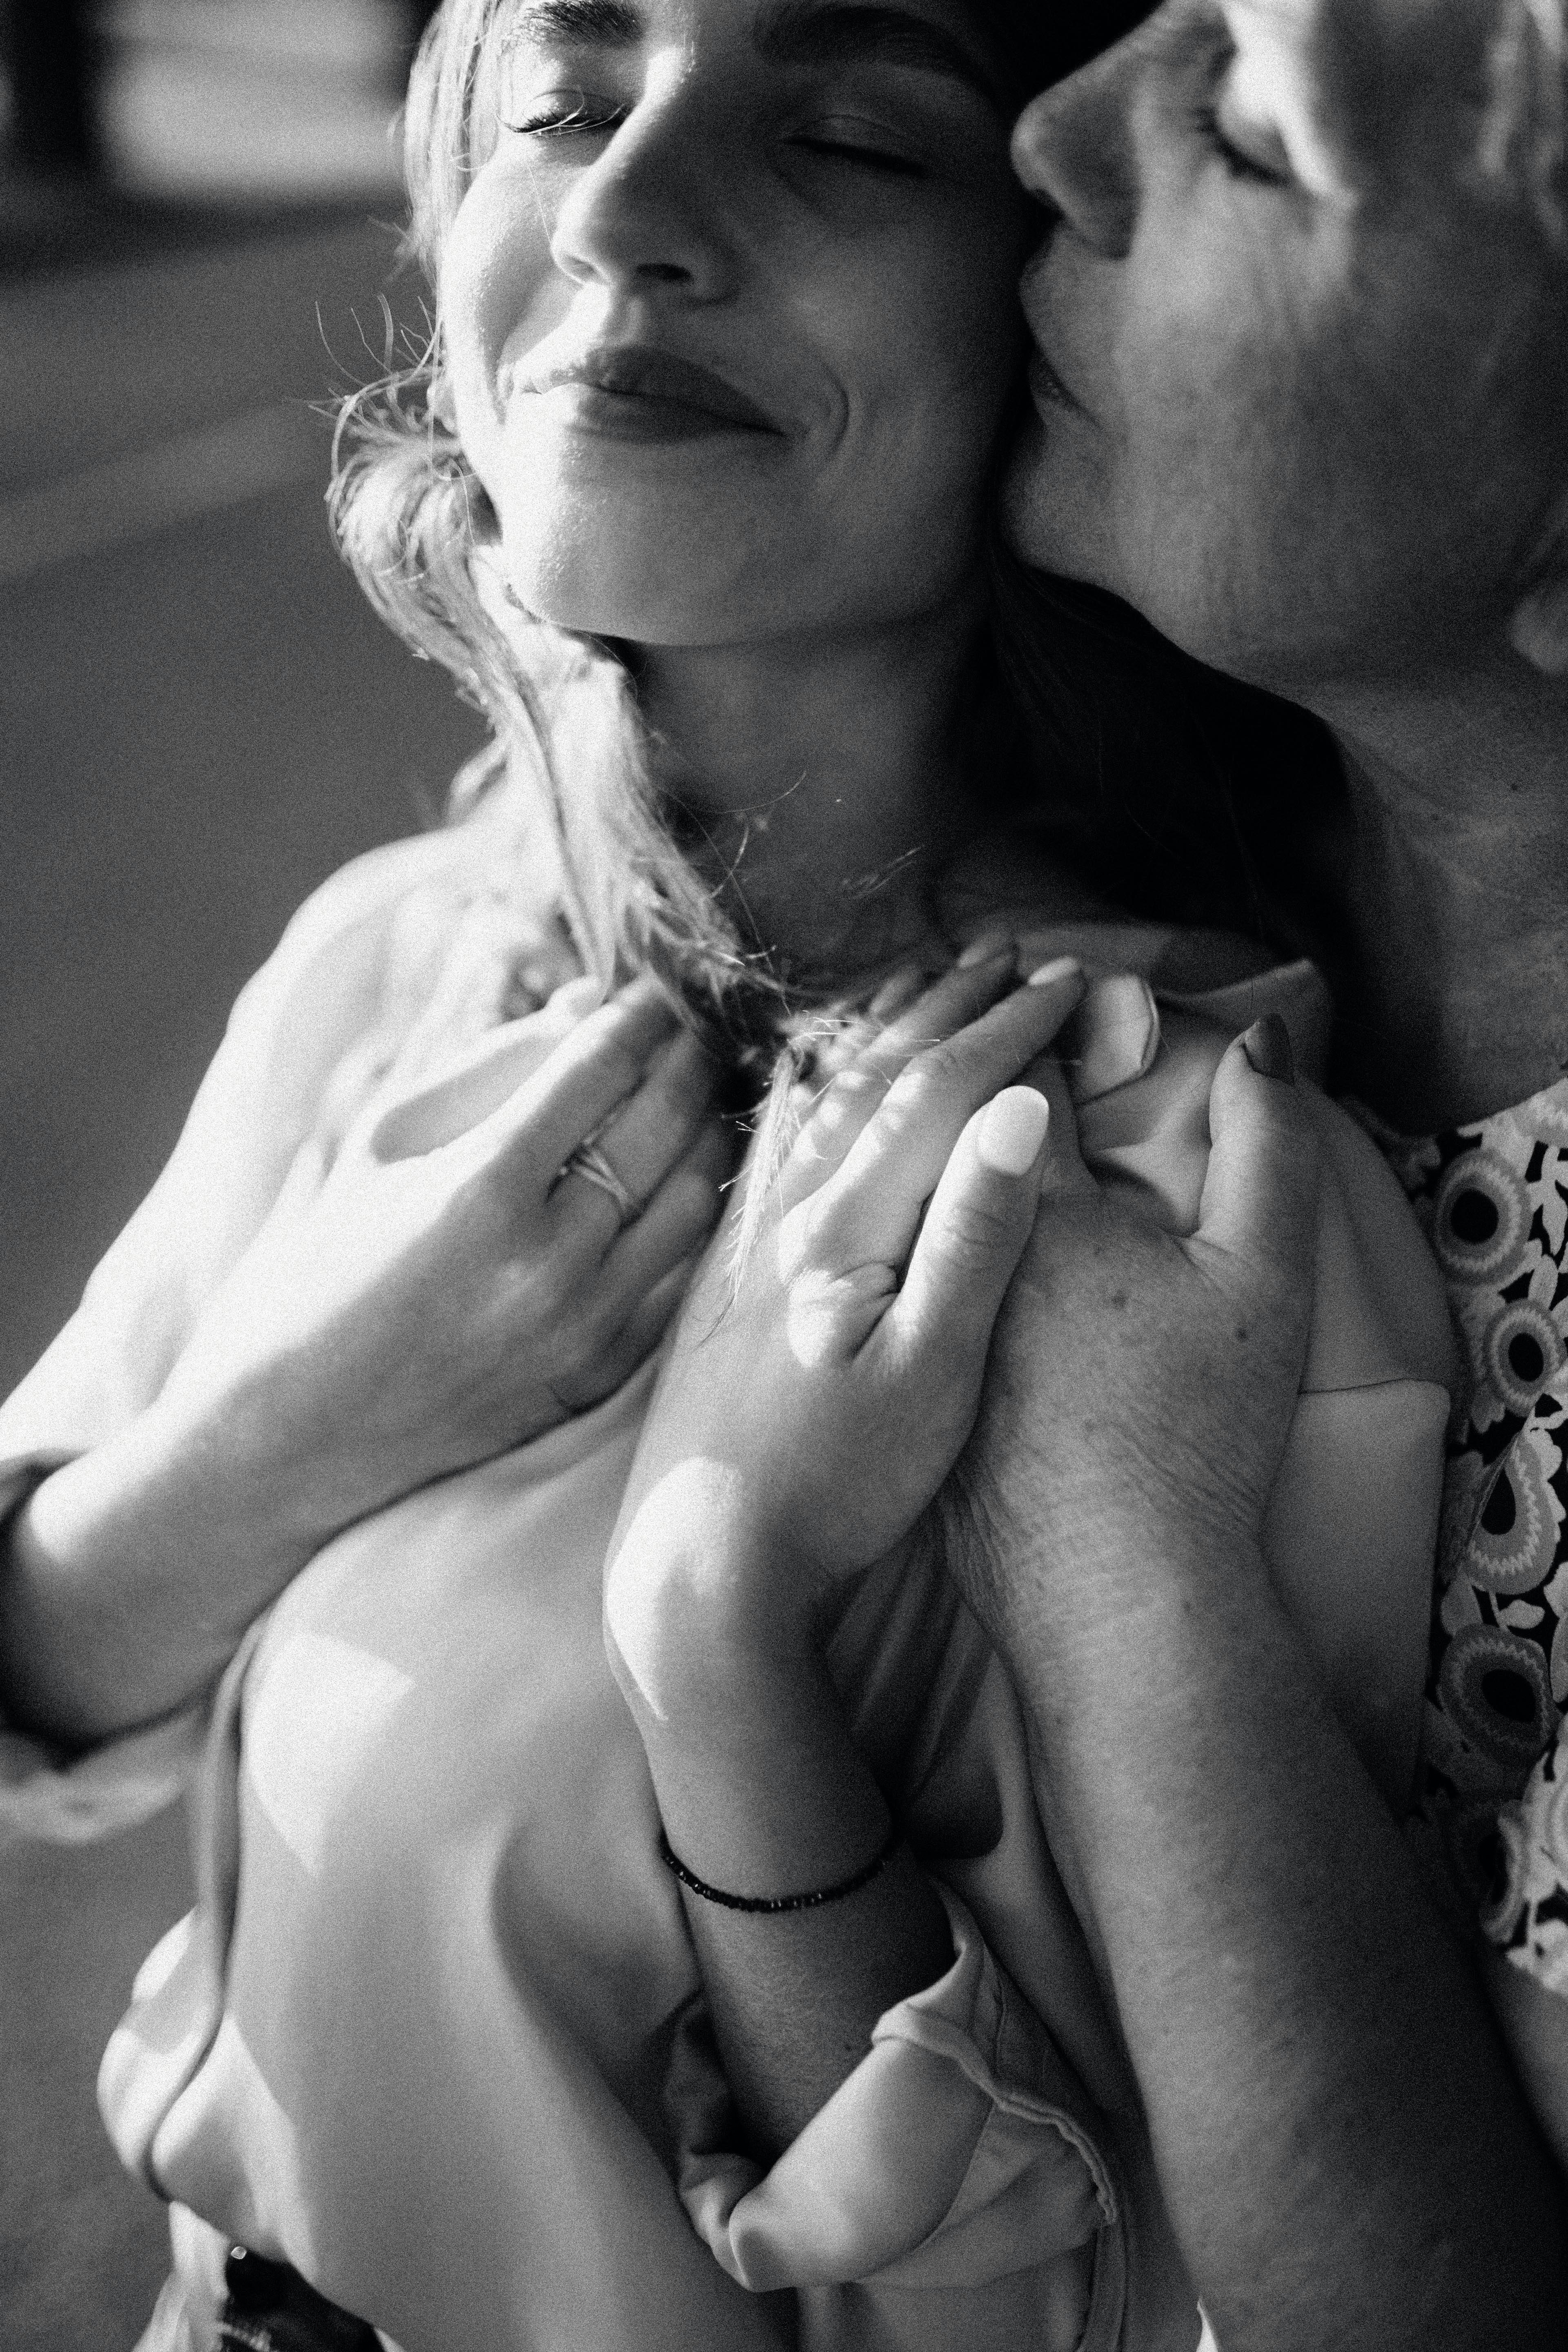 Eine Mutter und ihre Tochter, die sich umarmen | Quelle: Pexels